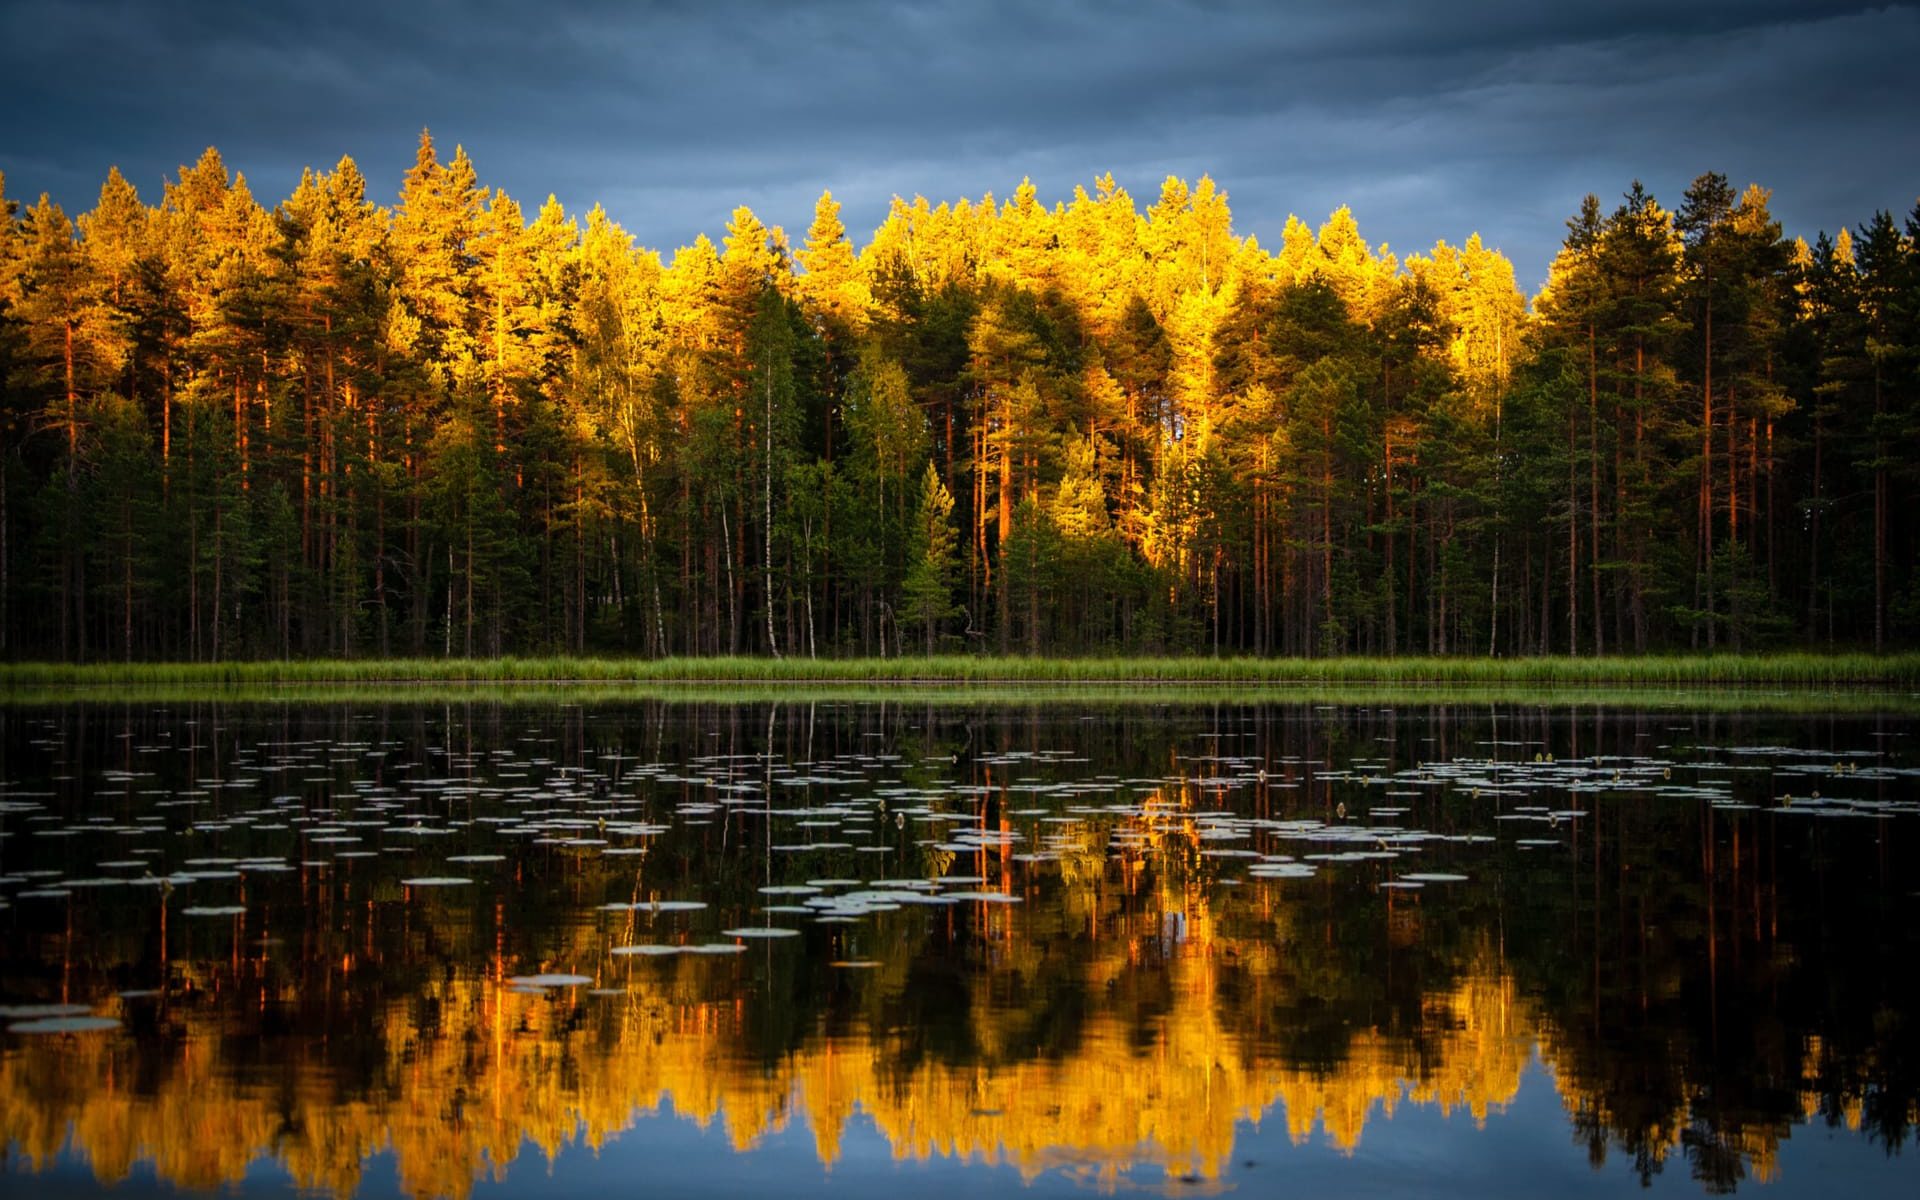 Skog i höst skrud som speglas i en sjö